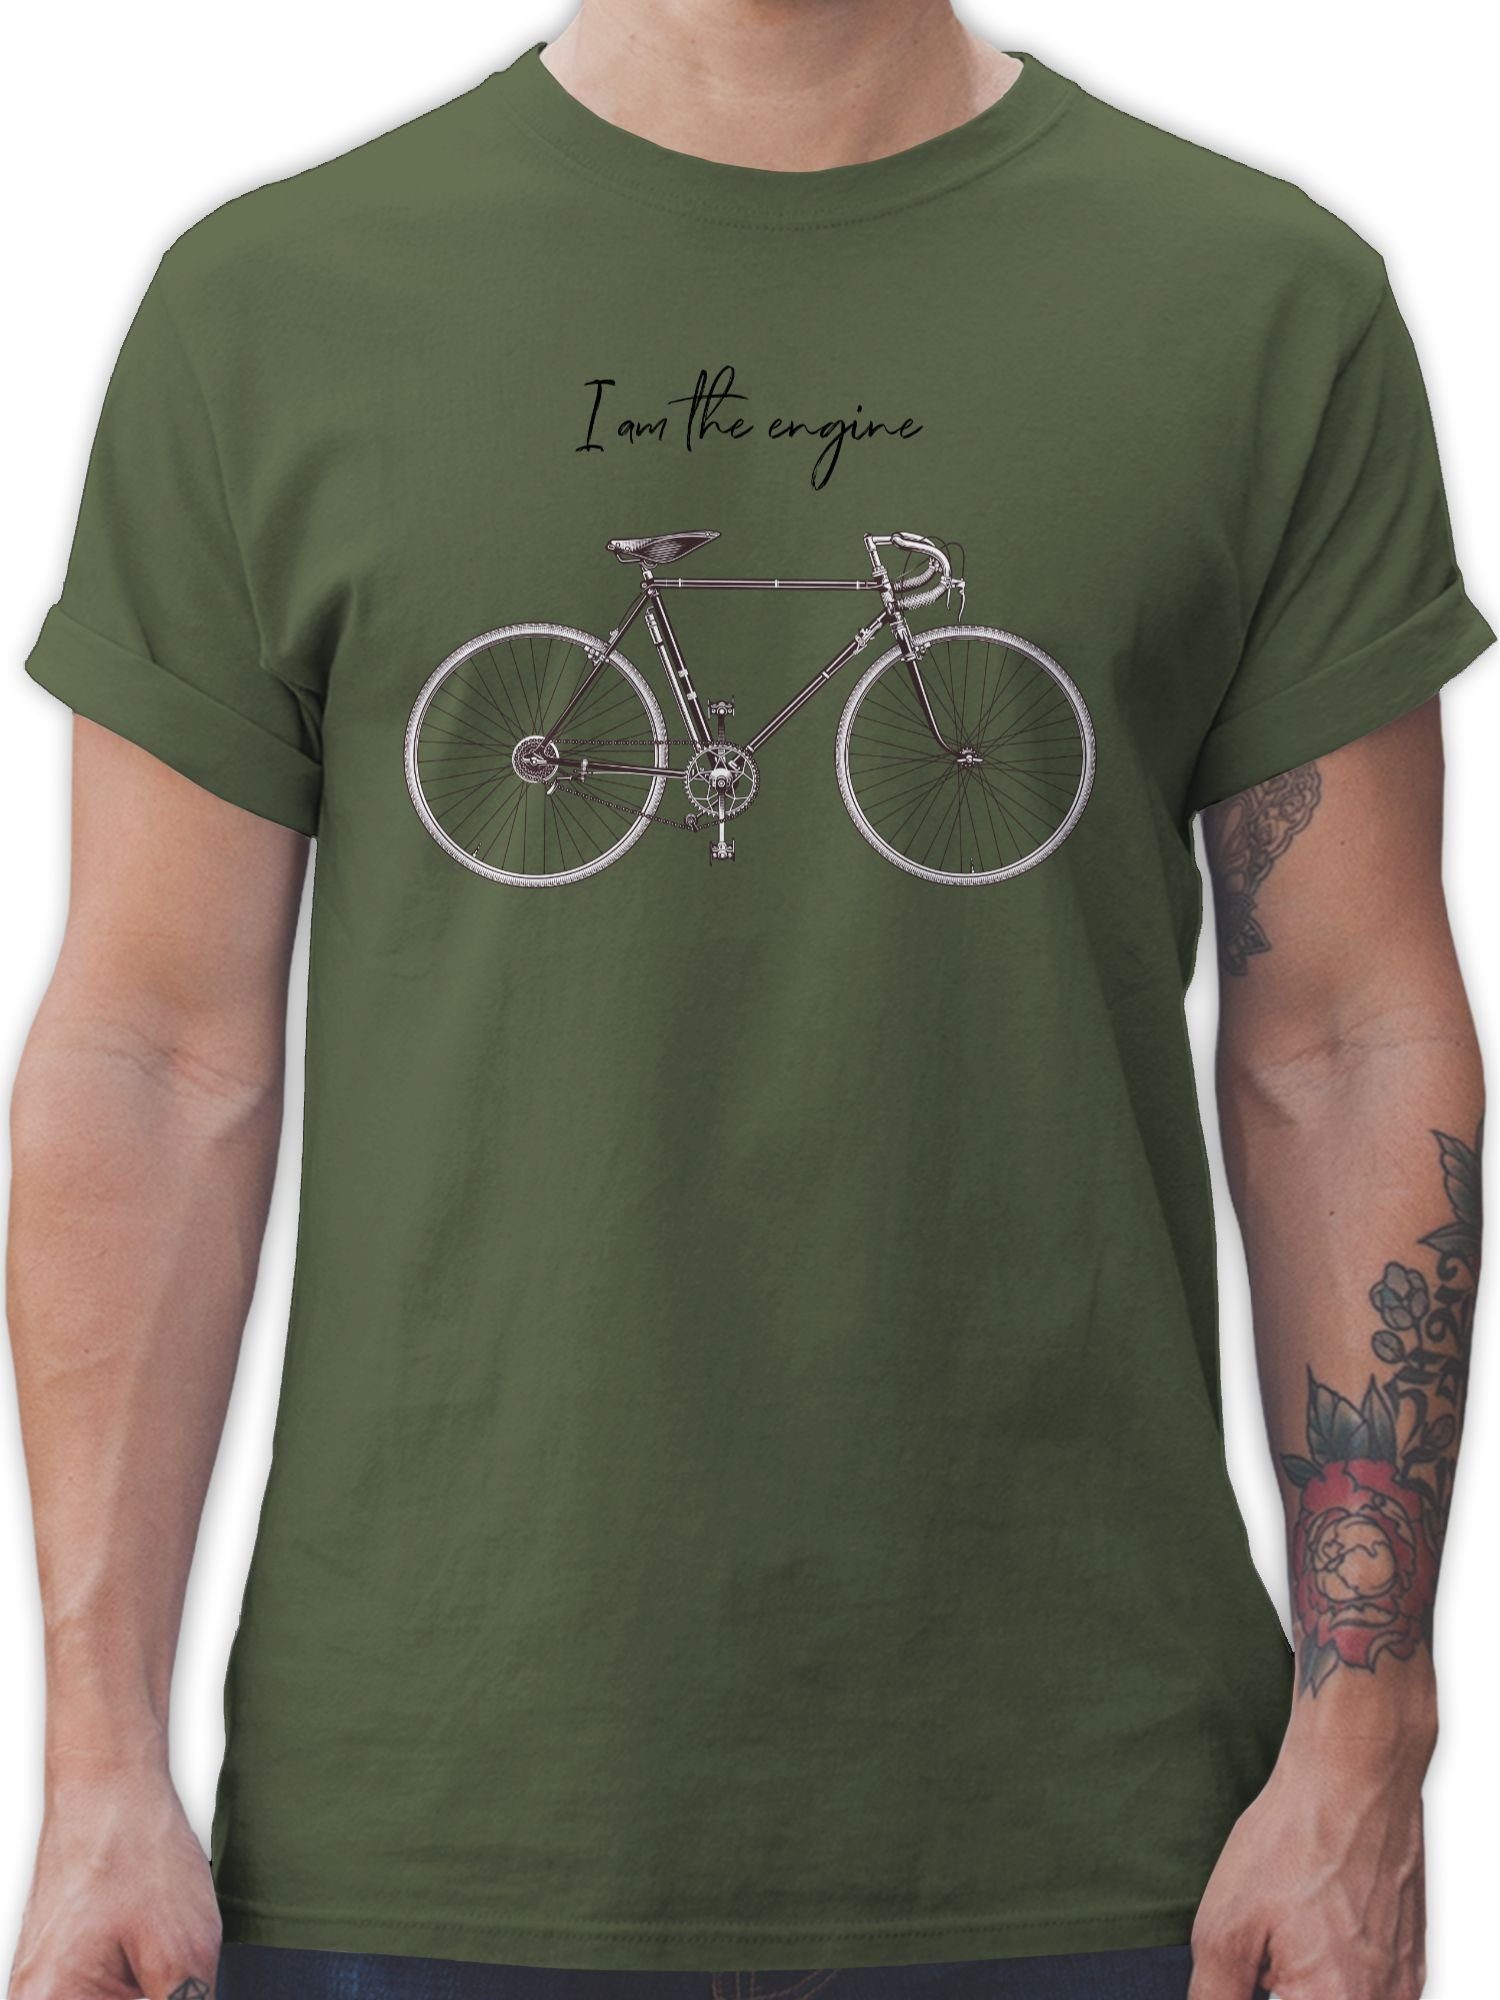 Shirtracer T-Shirt I am the engine - Fahrrad Bekleidung Radsport - Herren Premium T-Shirt army tshirt - fahrradbekleidung - fahrradshirt - fahhrad geschenke 2 Army Grün